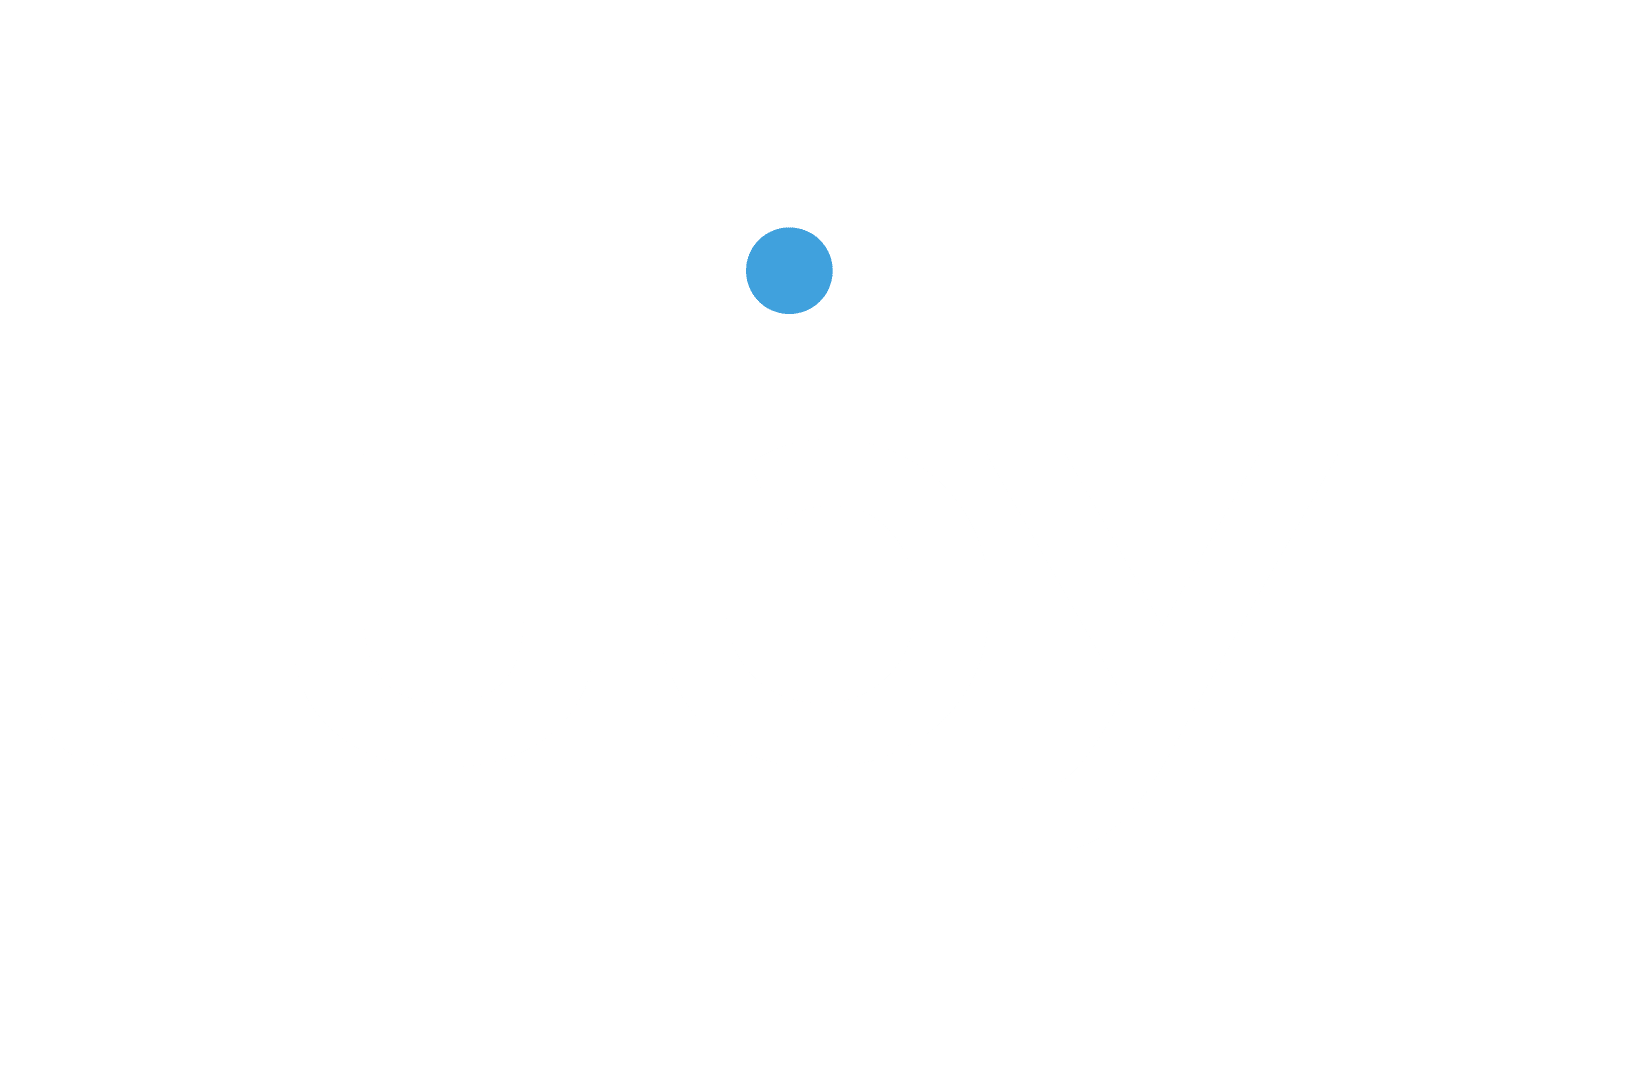 Case Cartos Luby Software